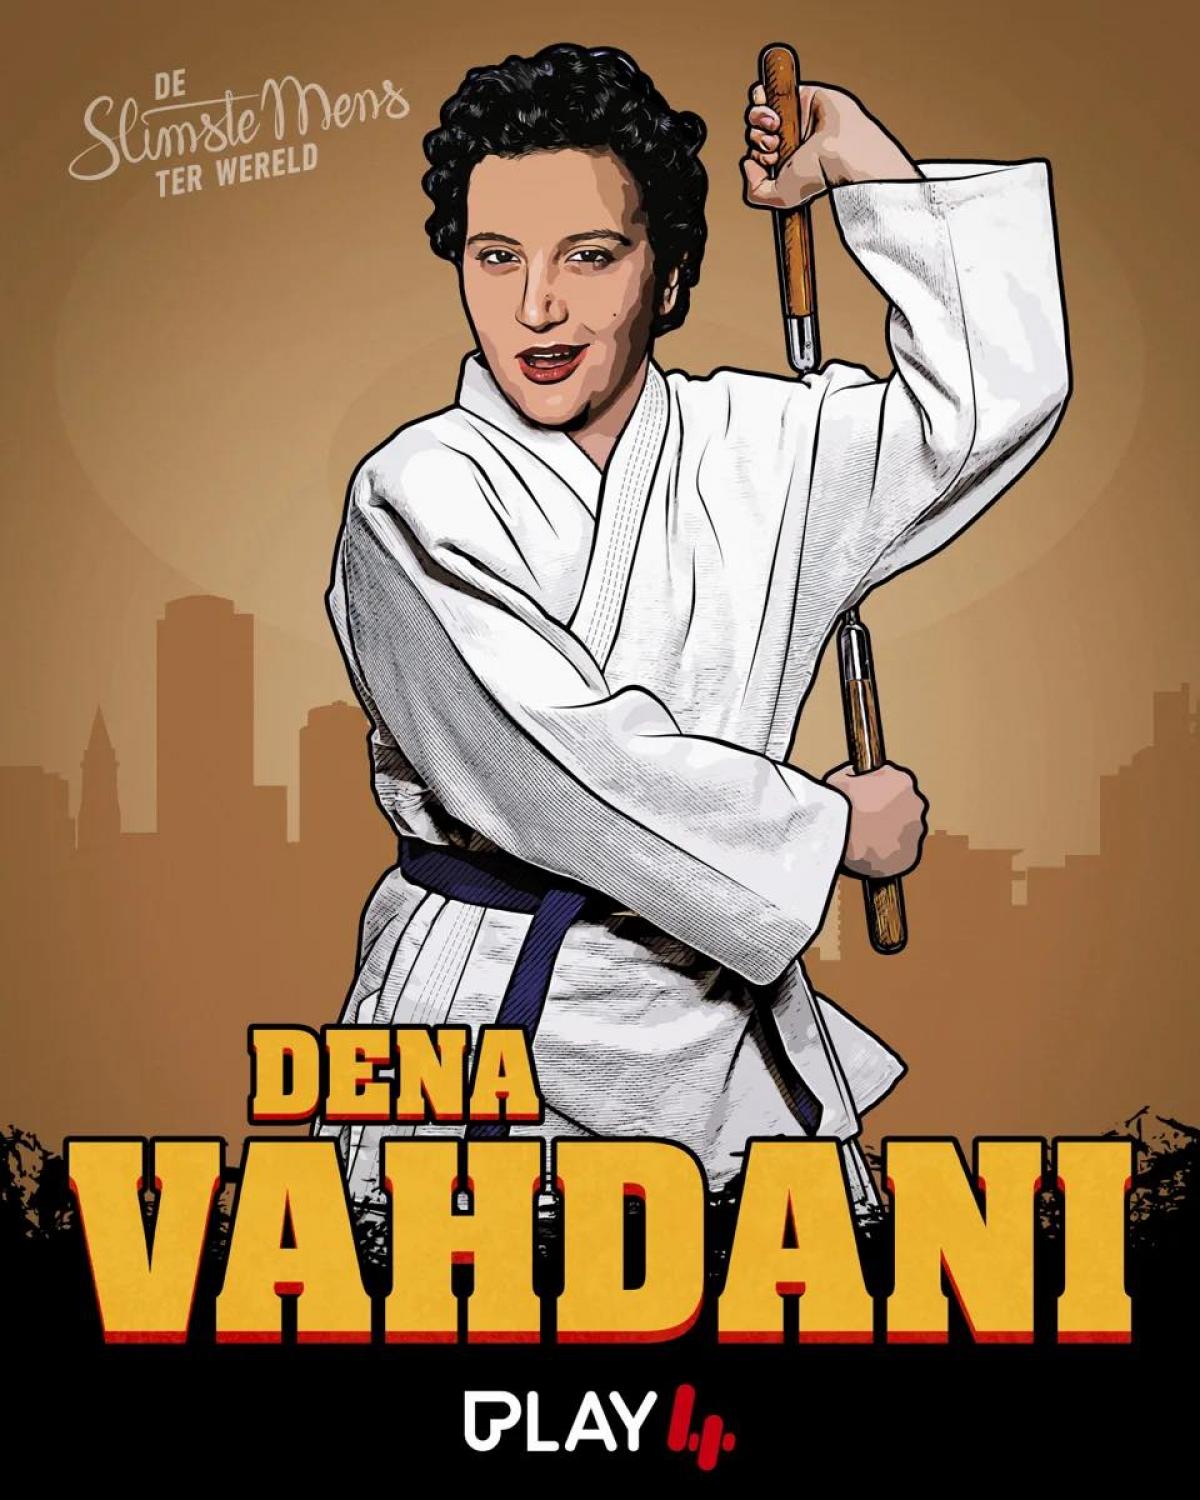 Comédienne Dena Vahdani